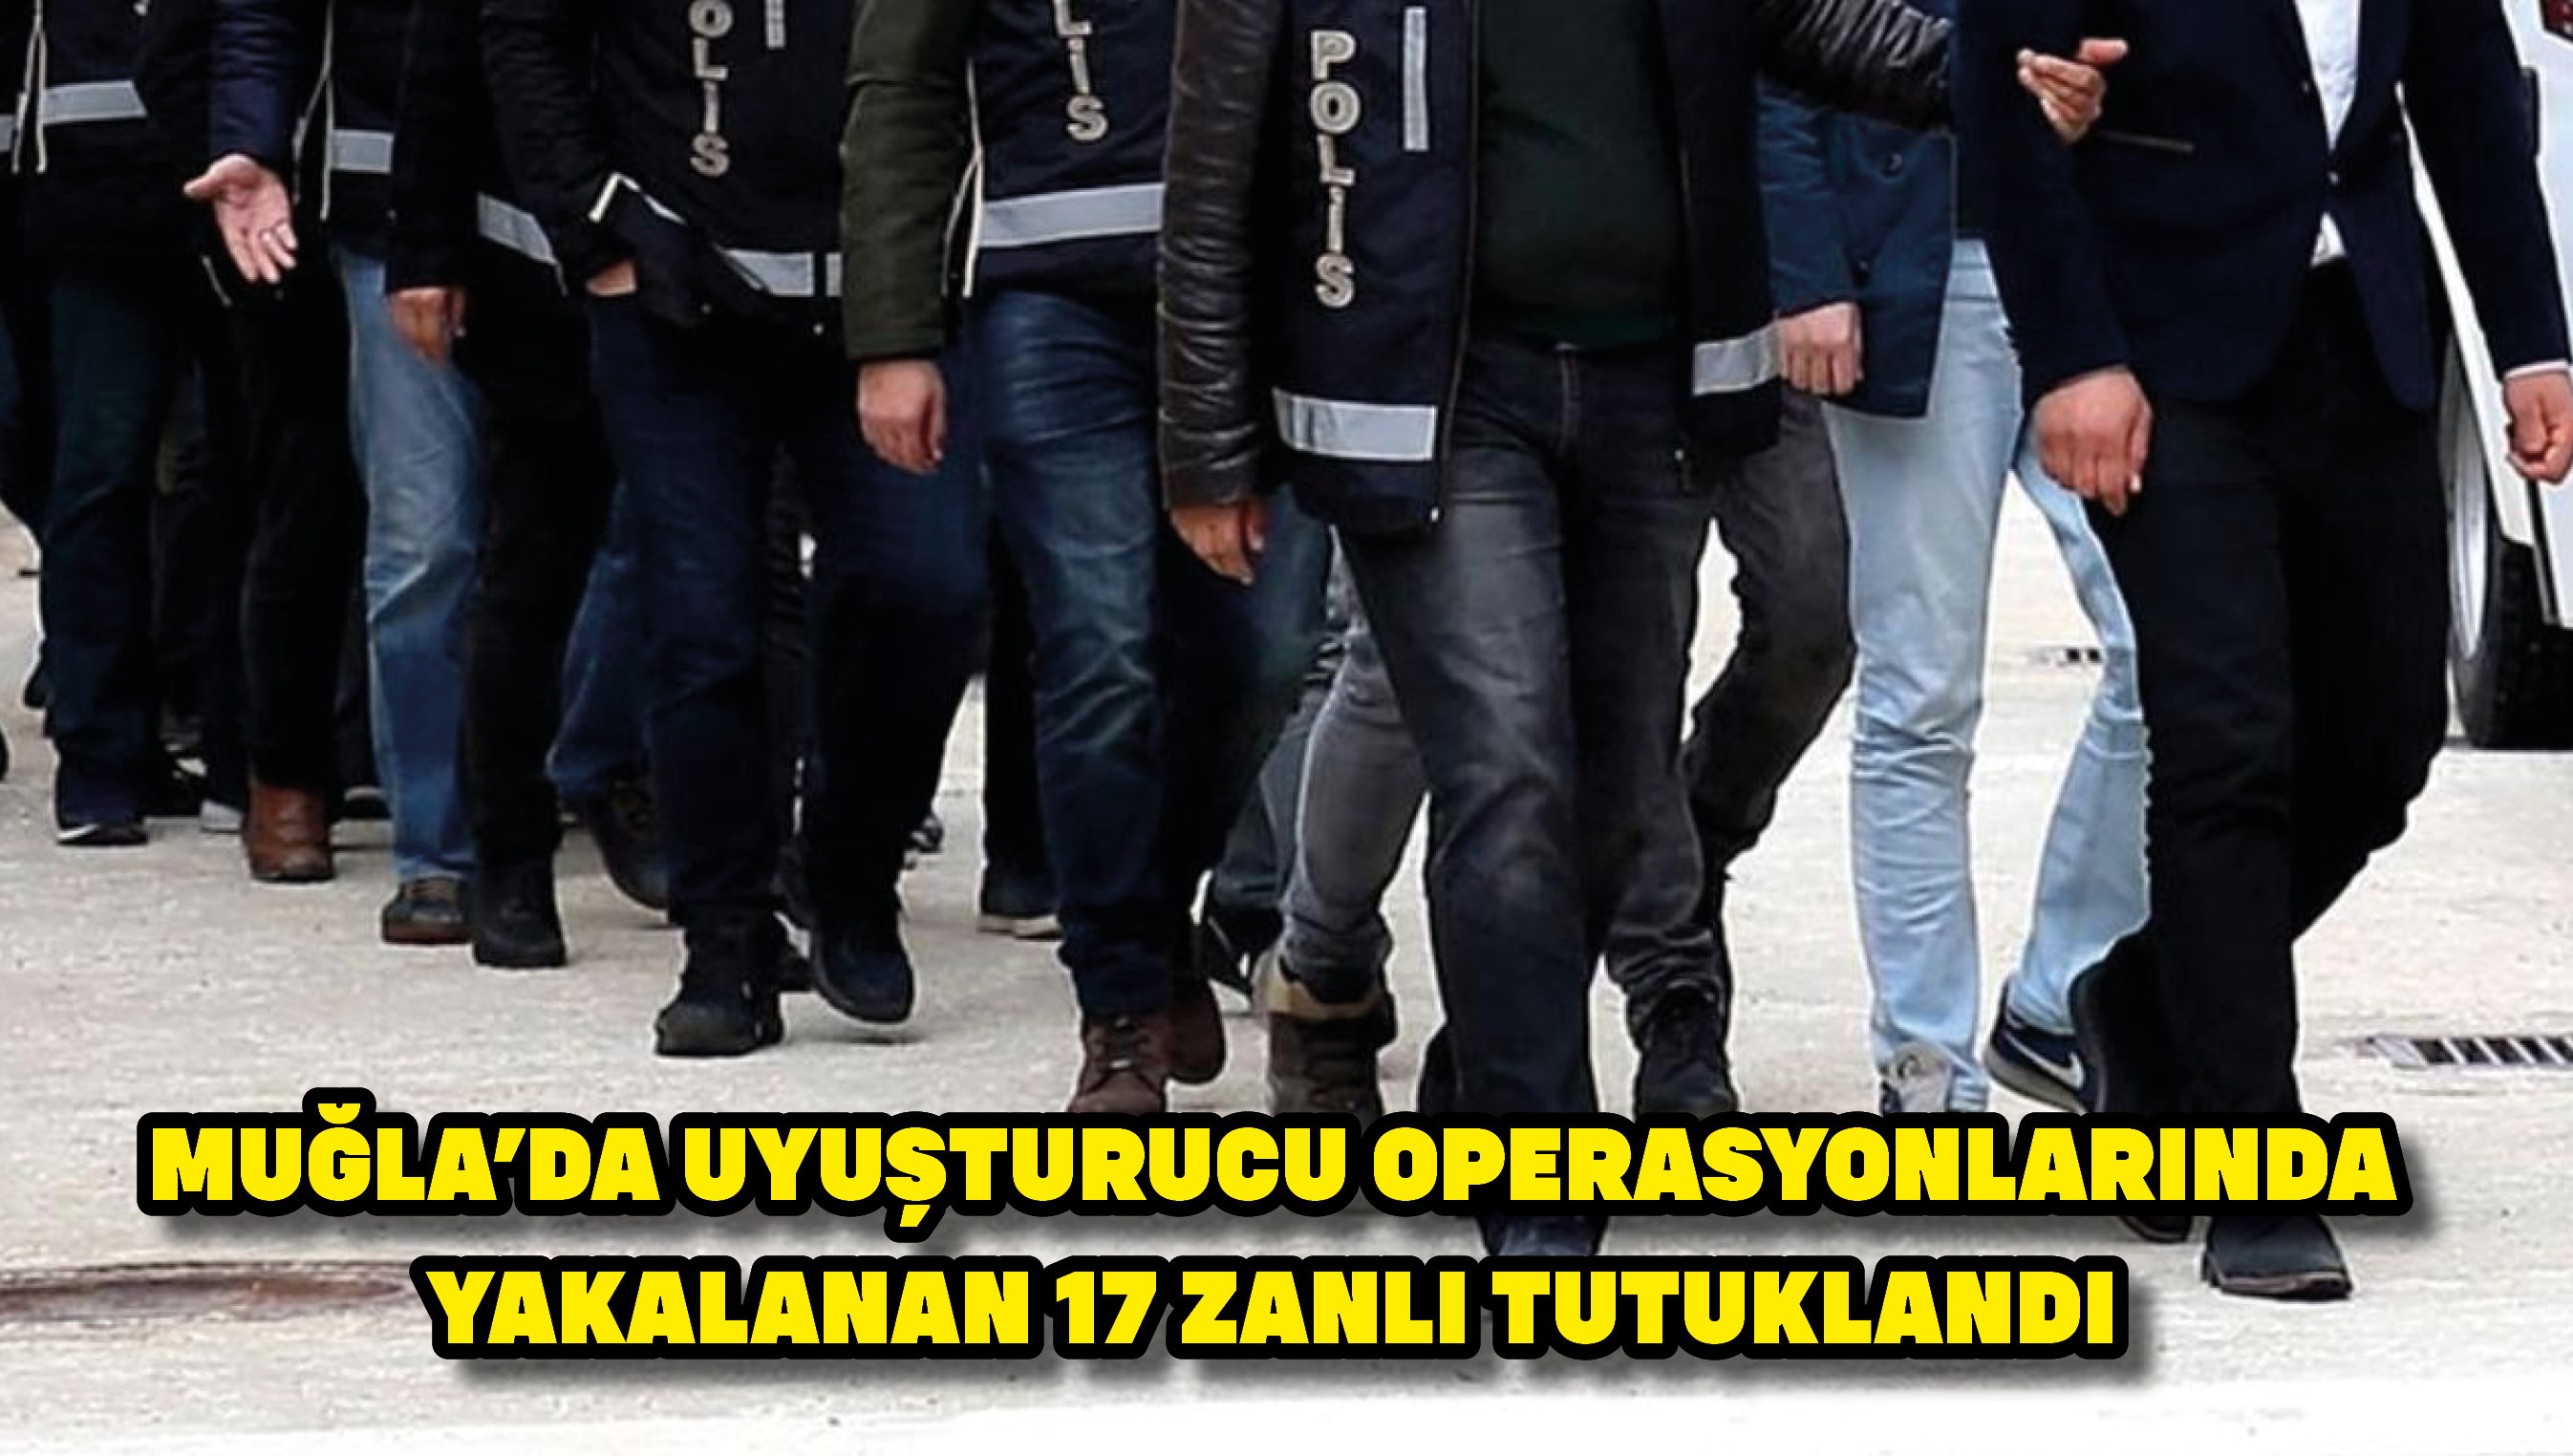 Muğla'da uyuşturucu operasyonlarında yakalanan 17 zanlı tutuklandı